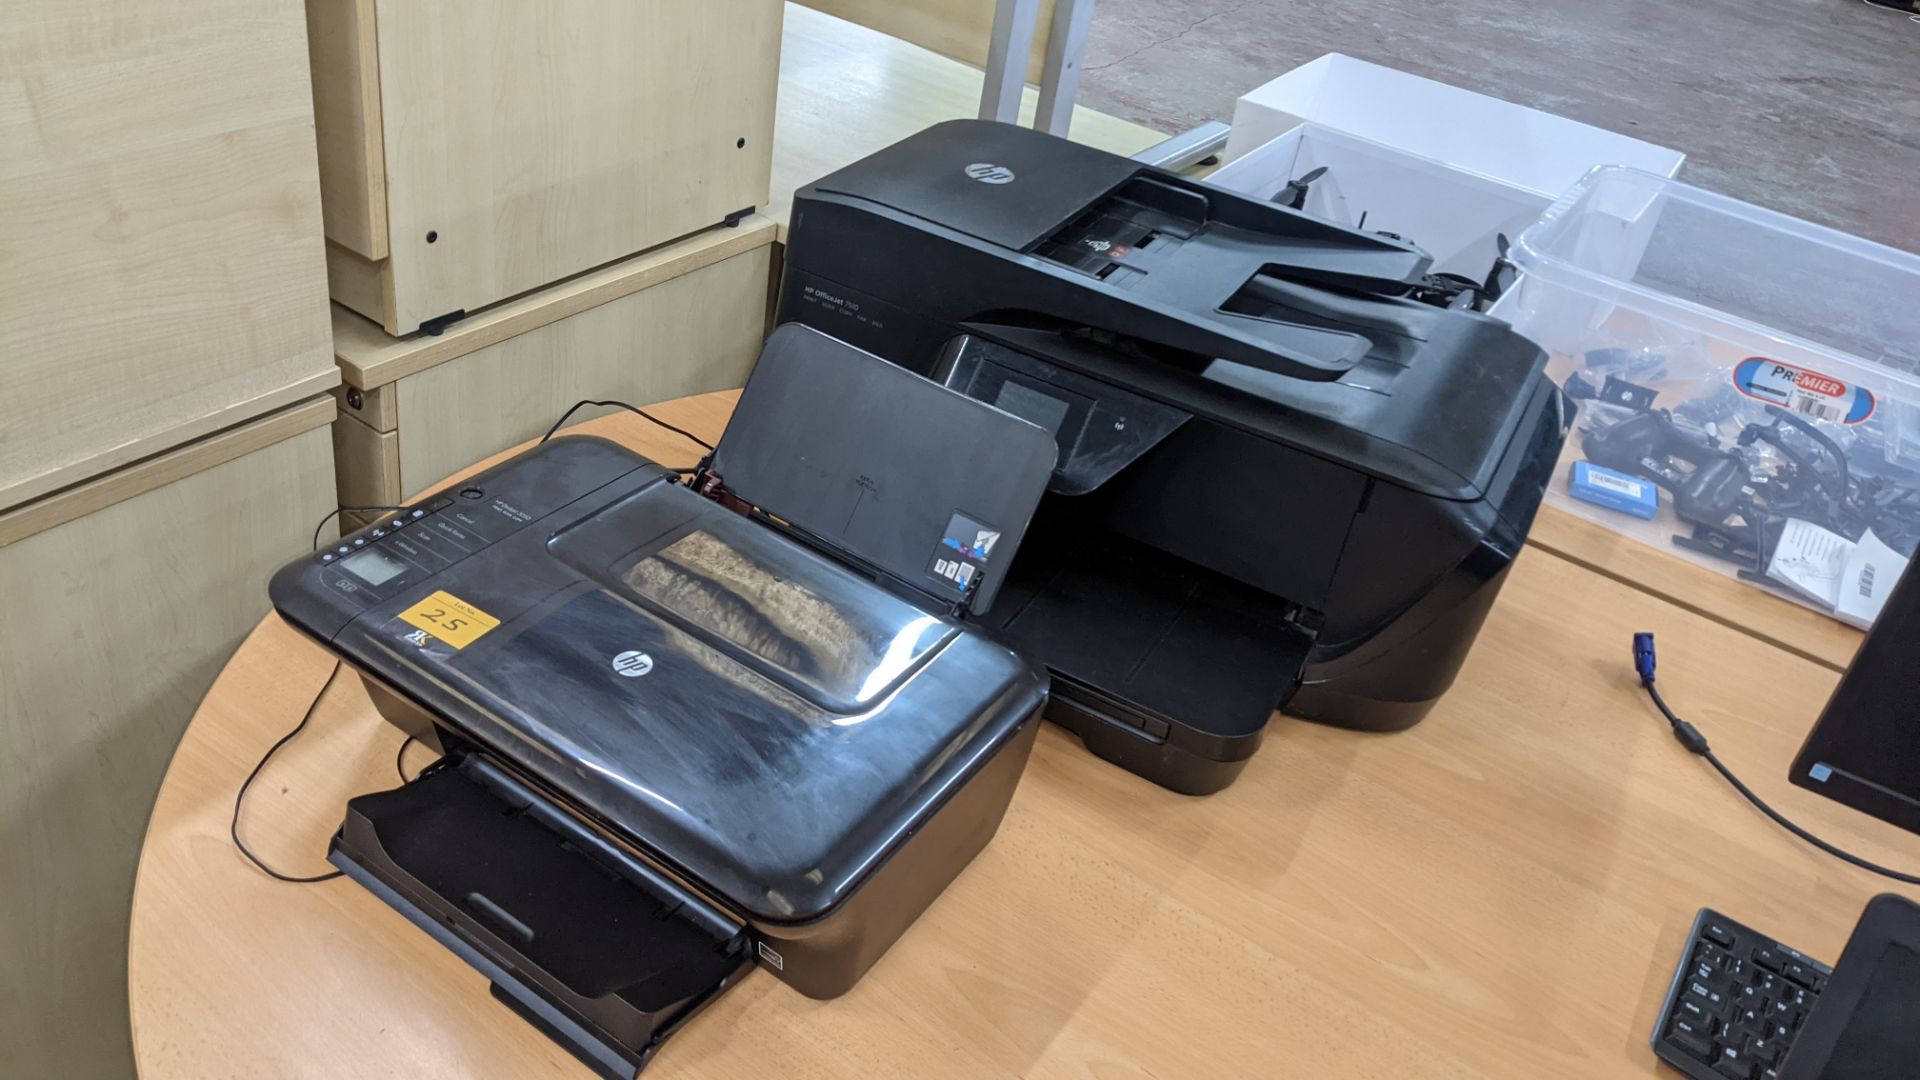 Pair of HP printers comprising HP OfficeJet 7510 printer/scanner/copier/fax & HP DeskJet 3050 printe